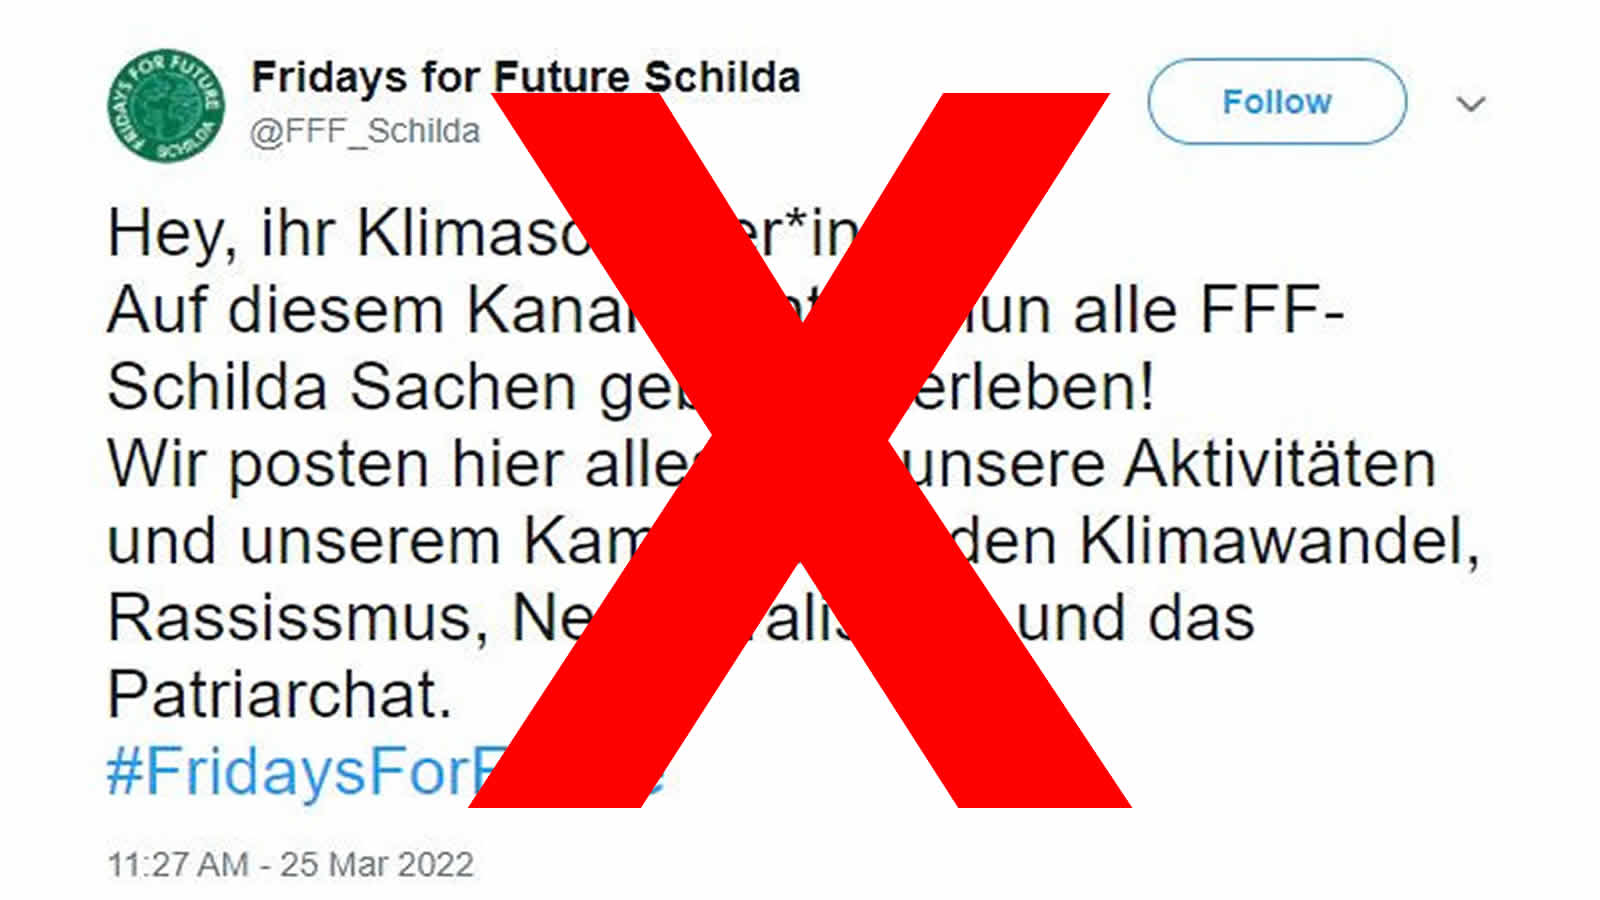 "Fridays for Future Schilda" kein echter FFF-Account auf Twitter